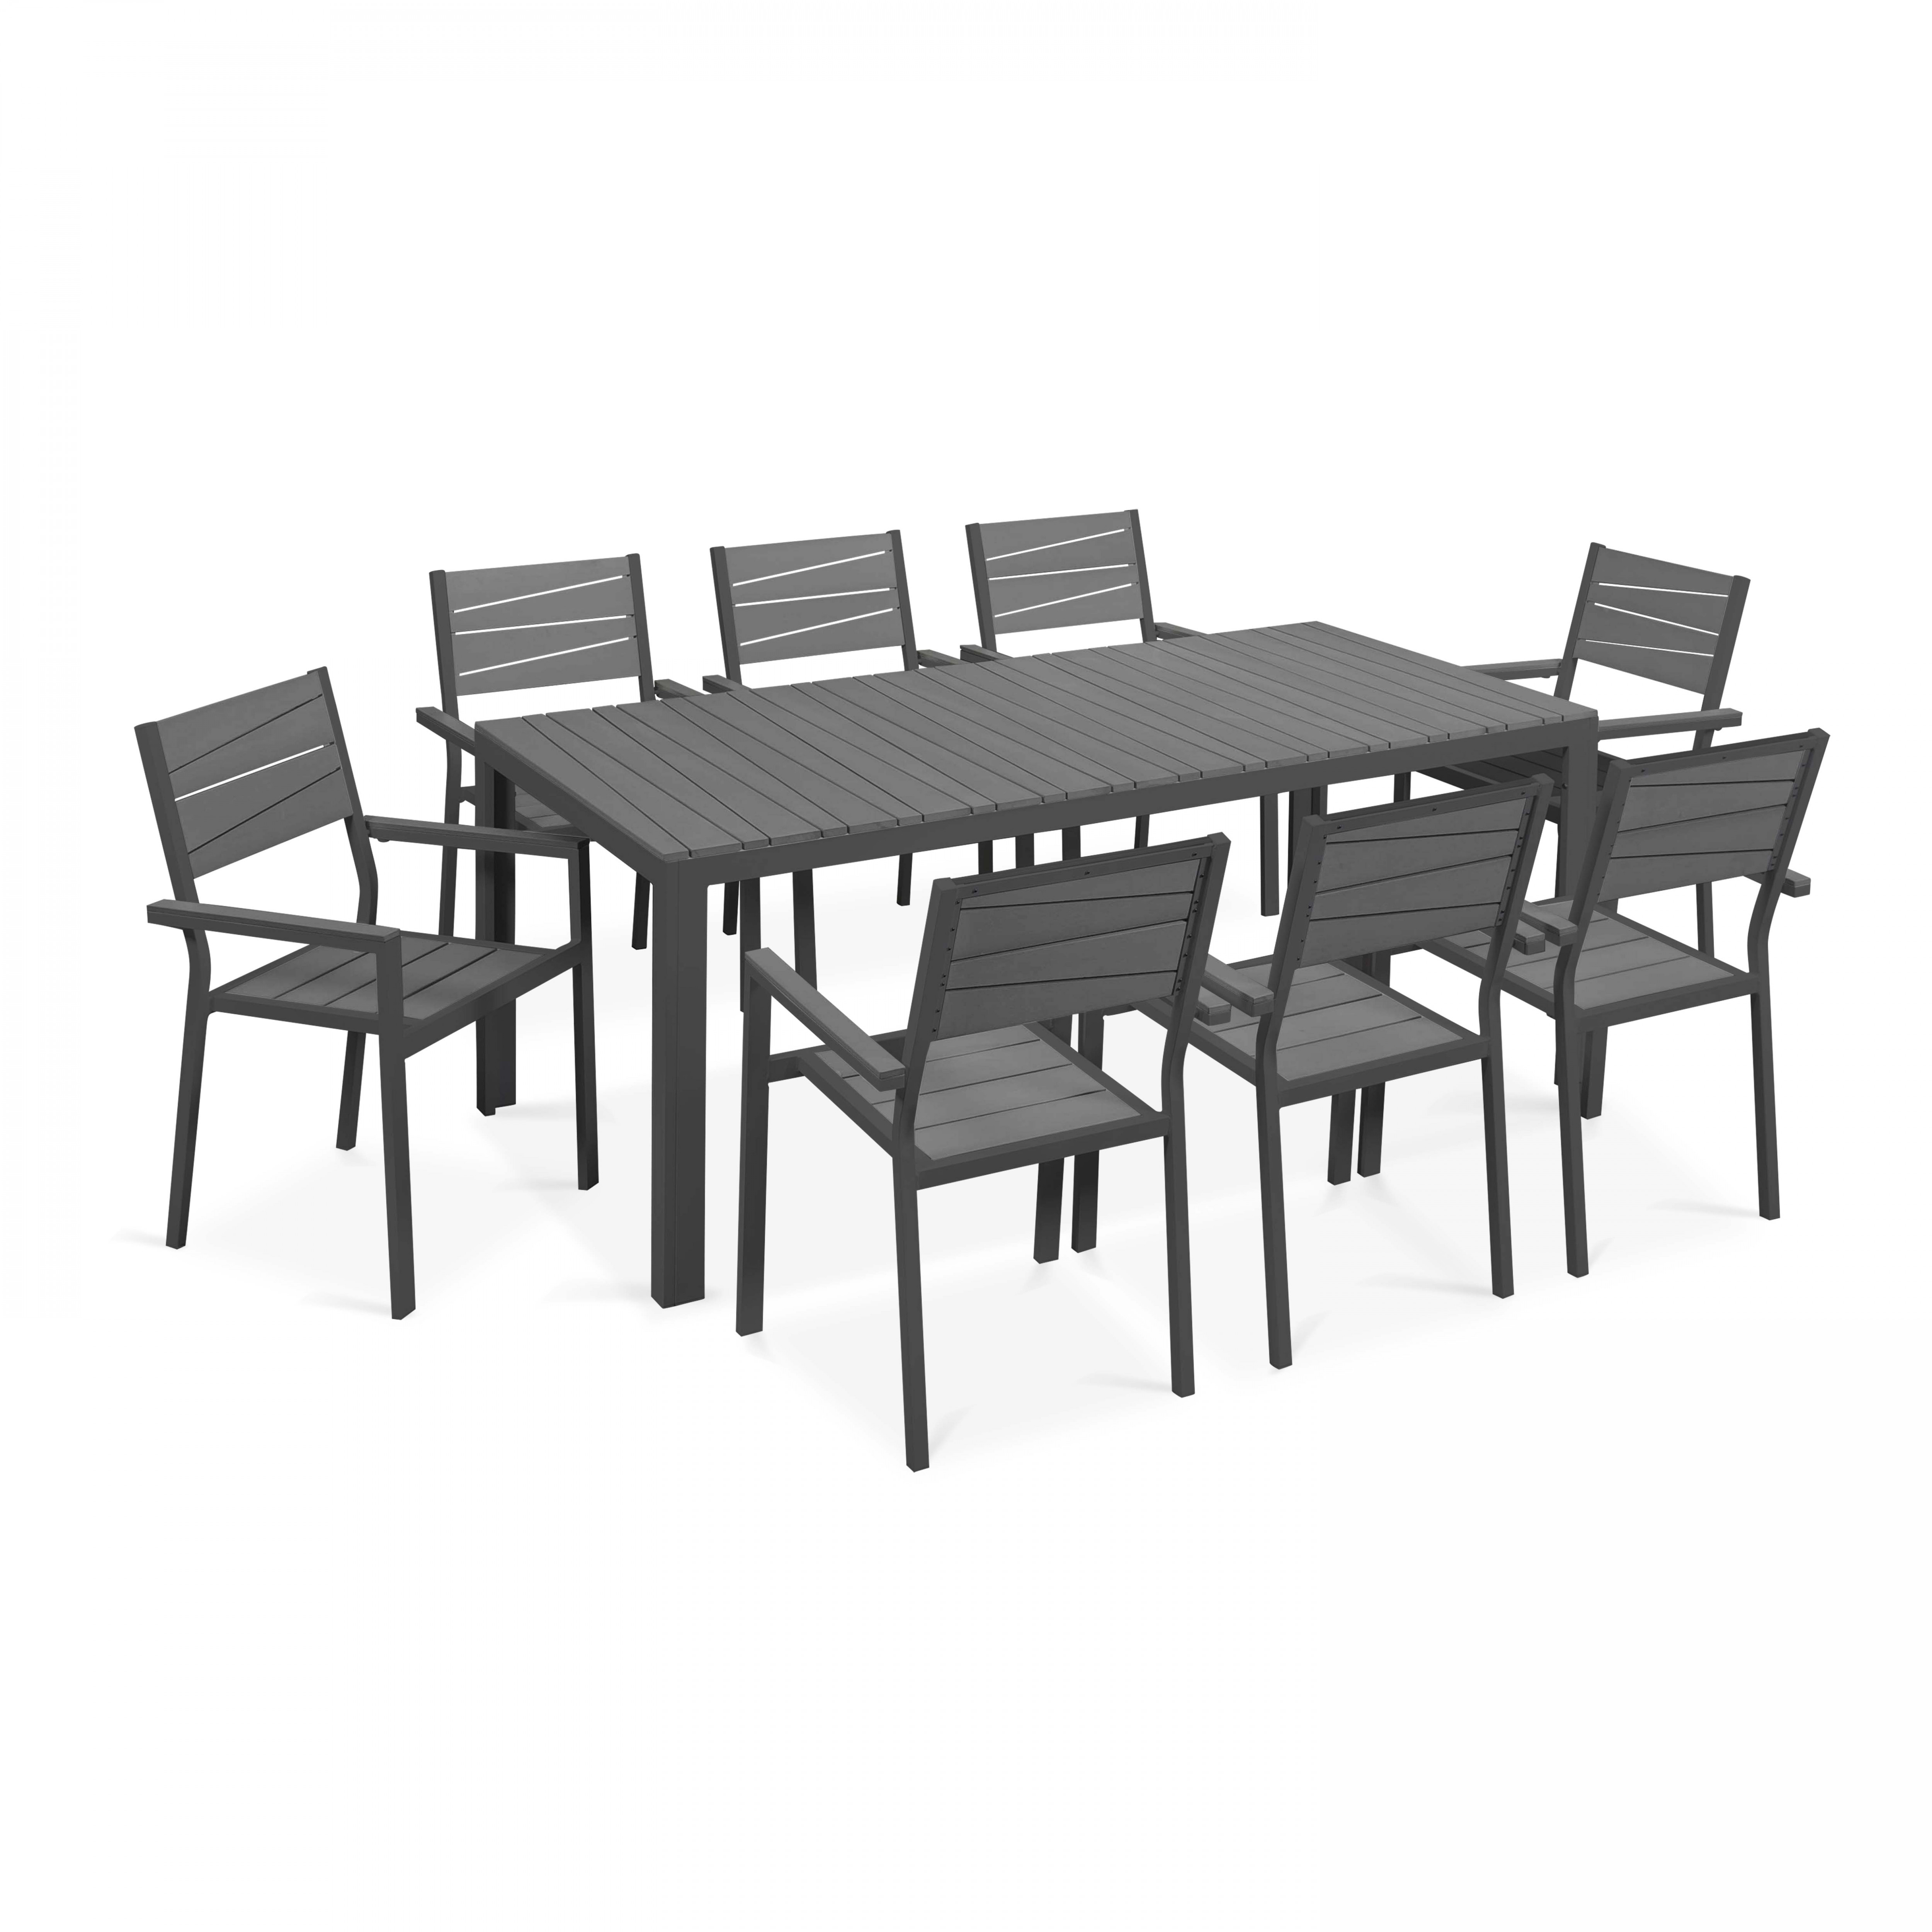 Table de jardin aluminium et polywood et 8 chaises avec accoudoirs